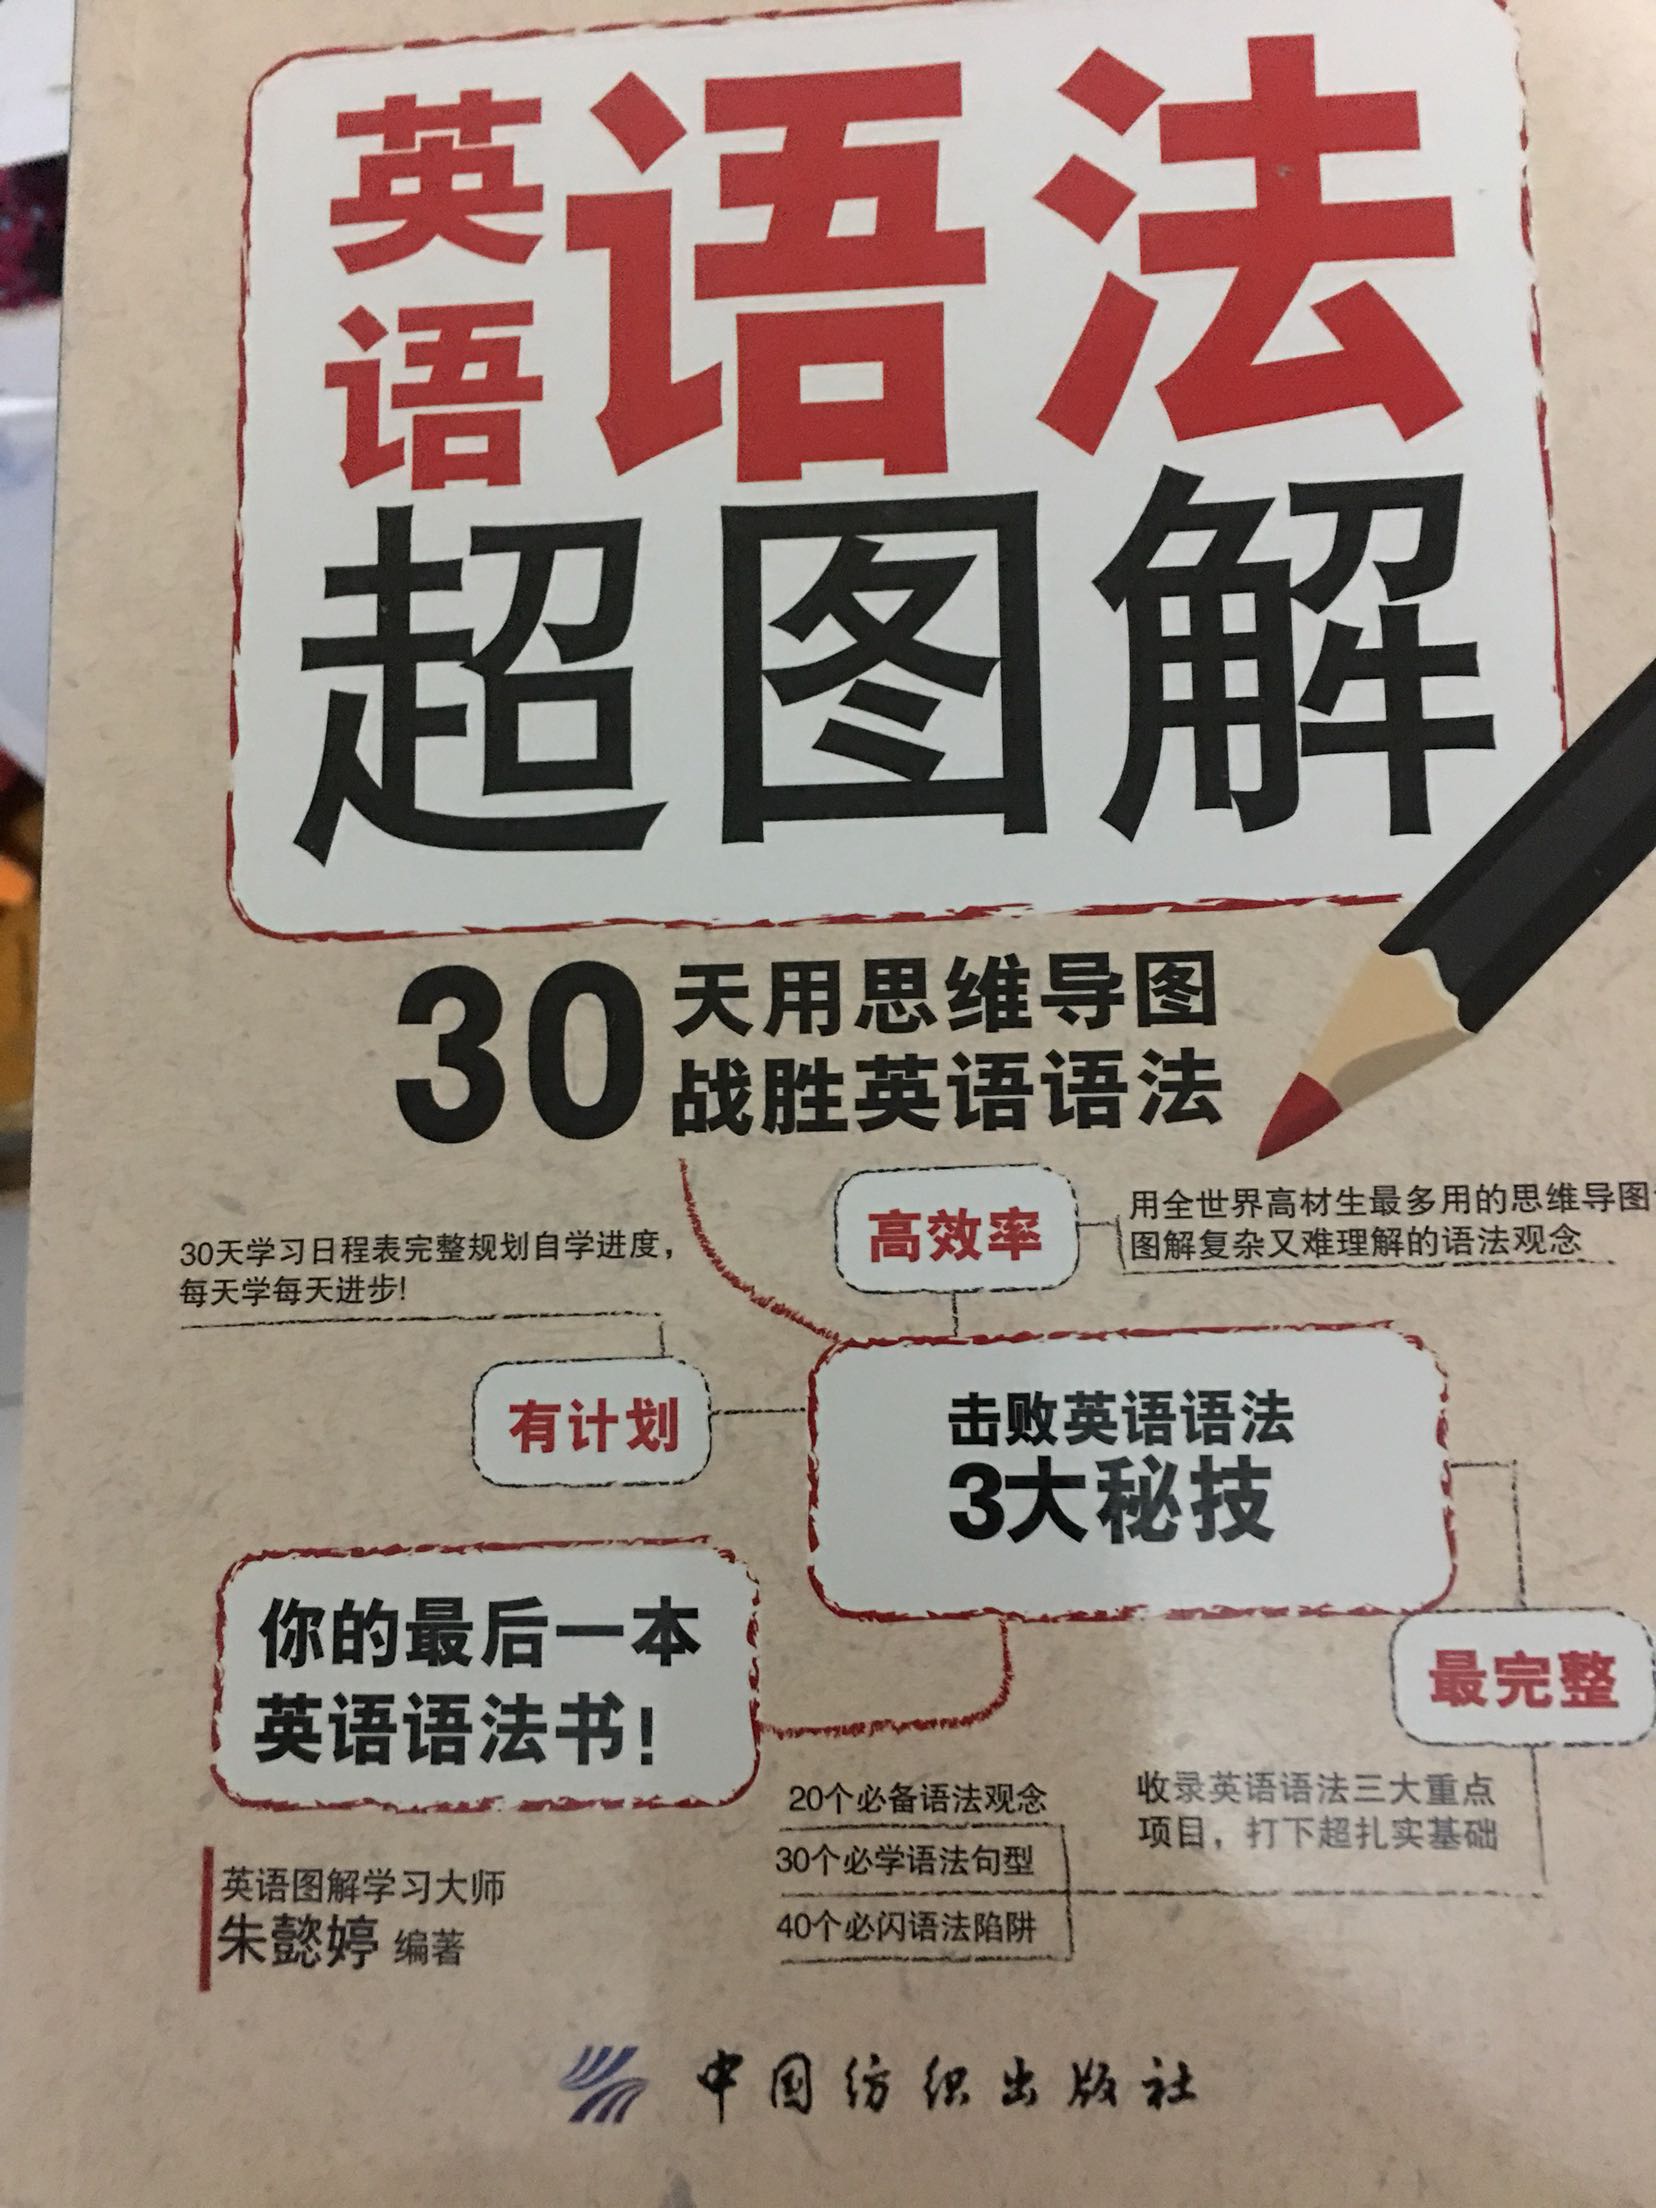 这本书还没有开始看，好久没有学英语啊，开始复习吧。